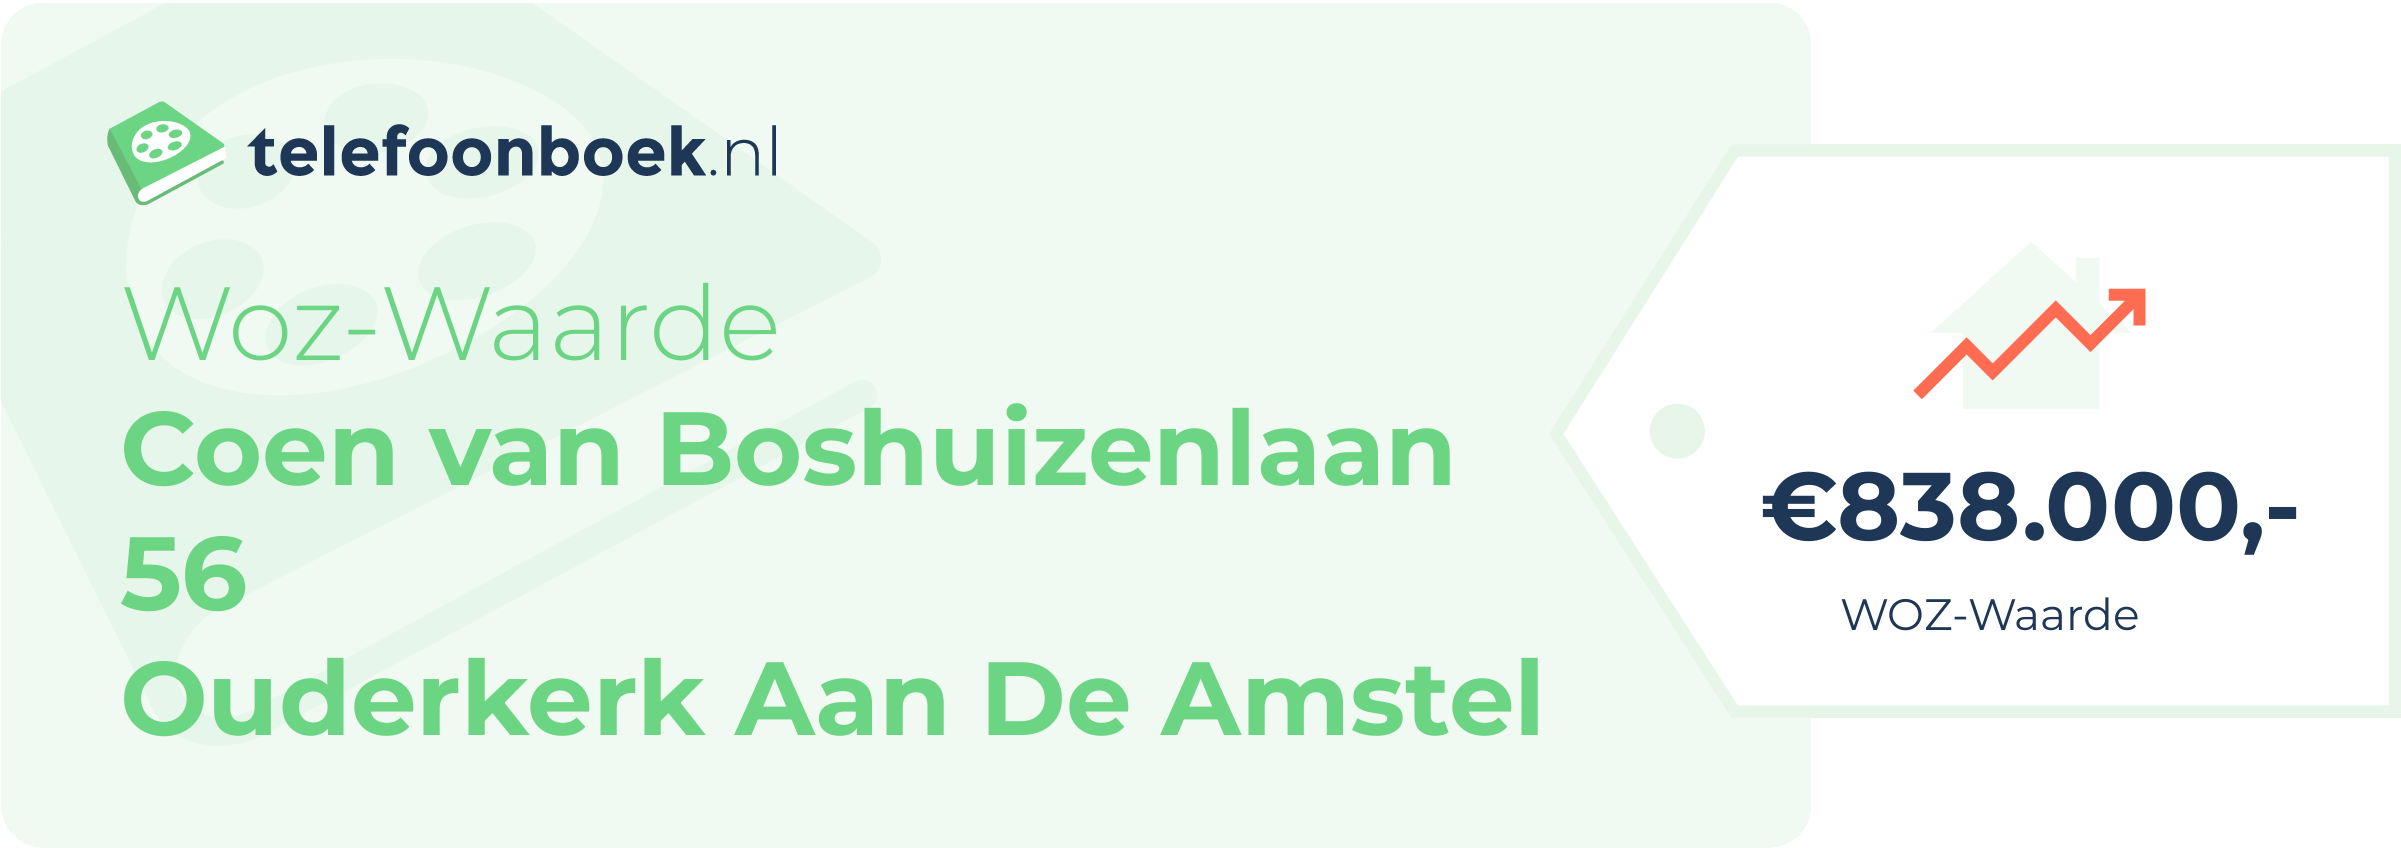 WOZ-waarde Coen Van Boshuizenlaan 56 Ouderkerk Aan De Amstel